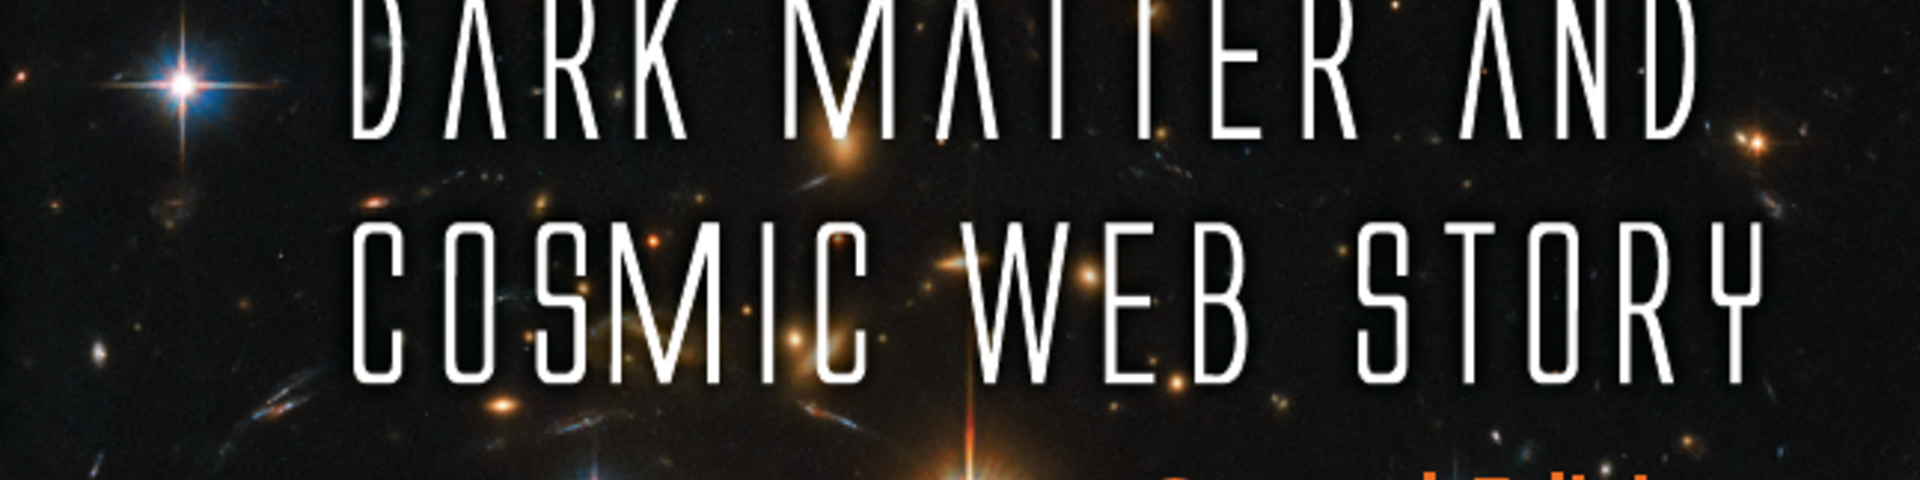 Dark Matter and Cosmic Web Story